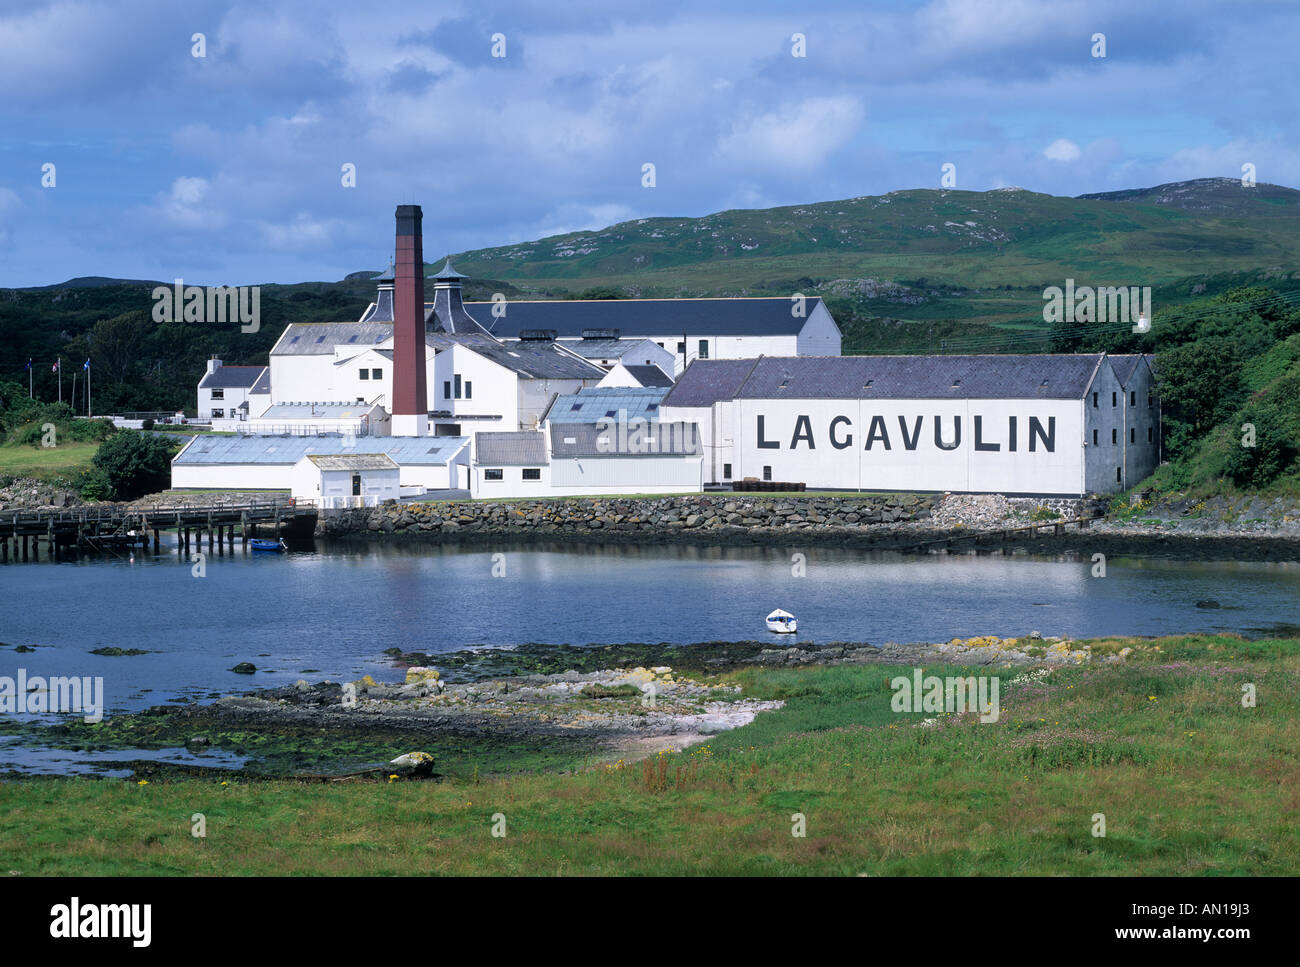 Lagavulin distillerie di whisky Islay Argyll Scotland Regno Unito Foto Stock